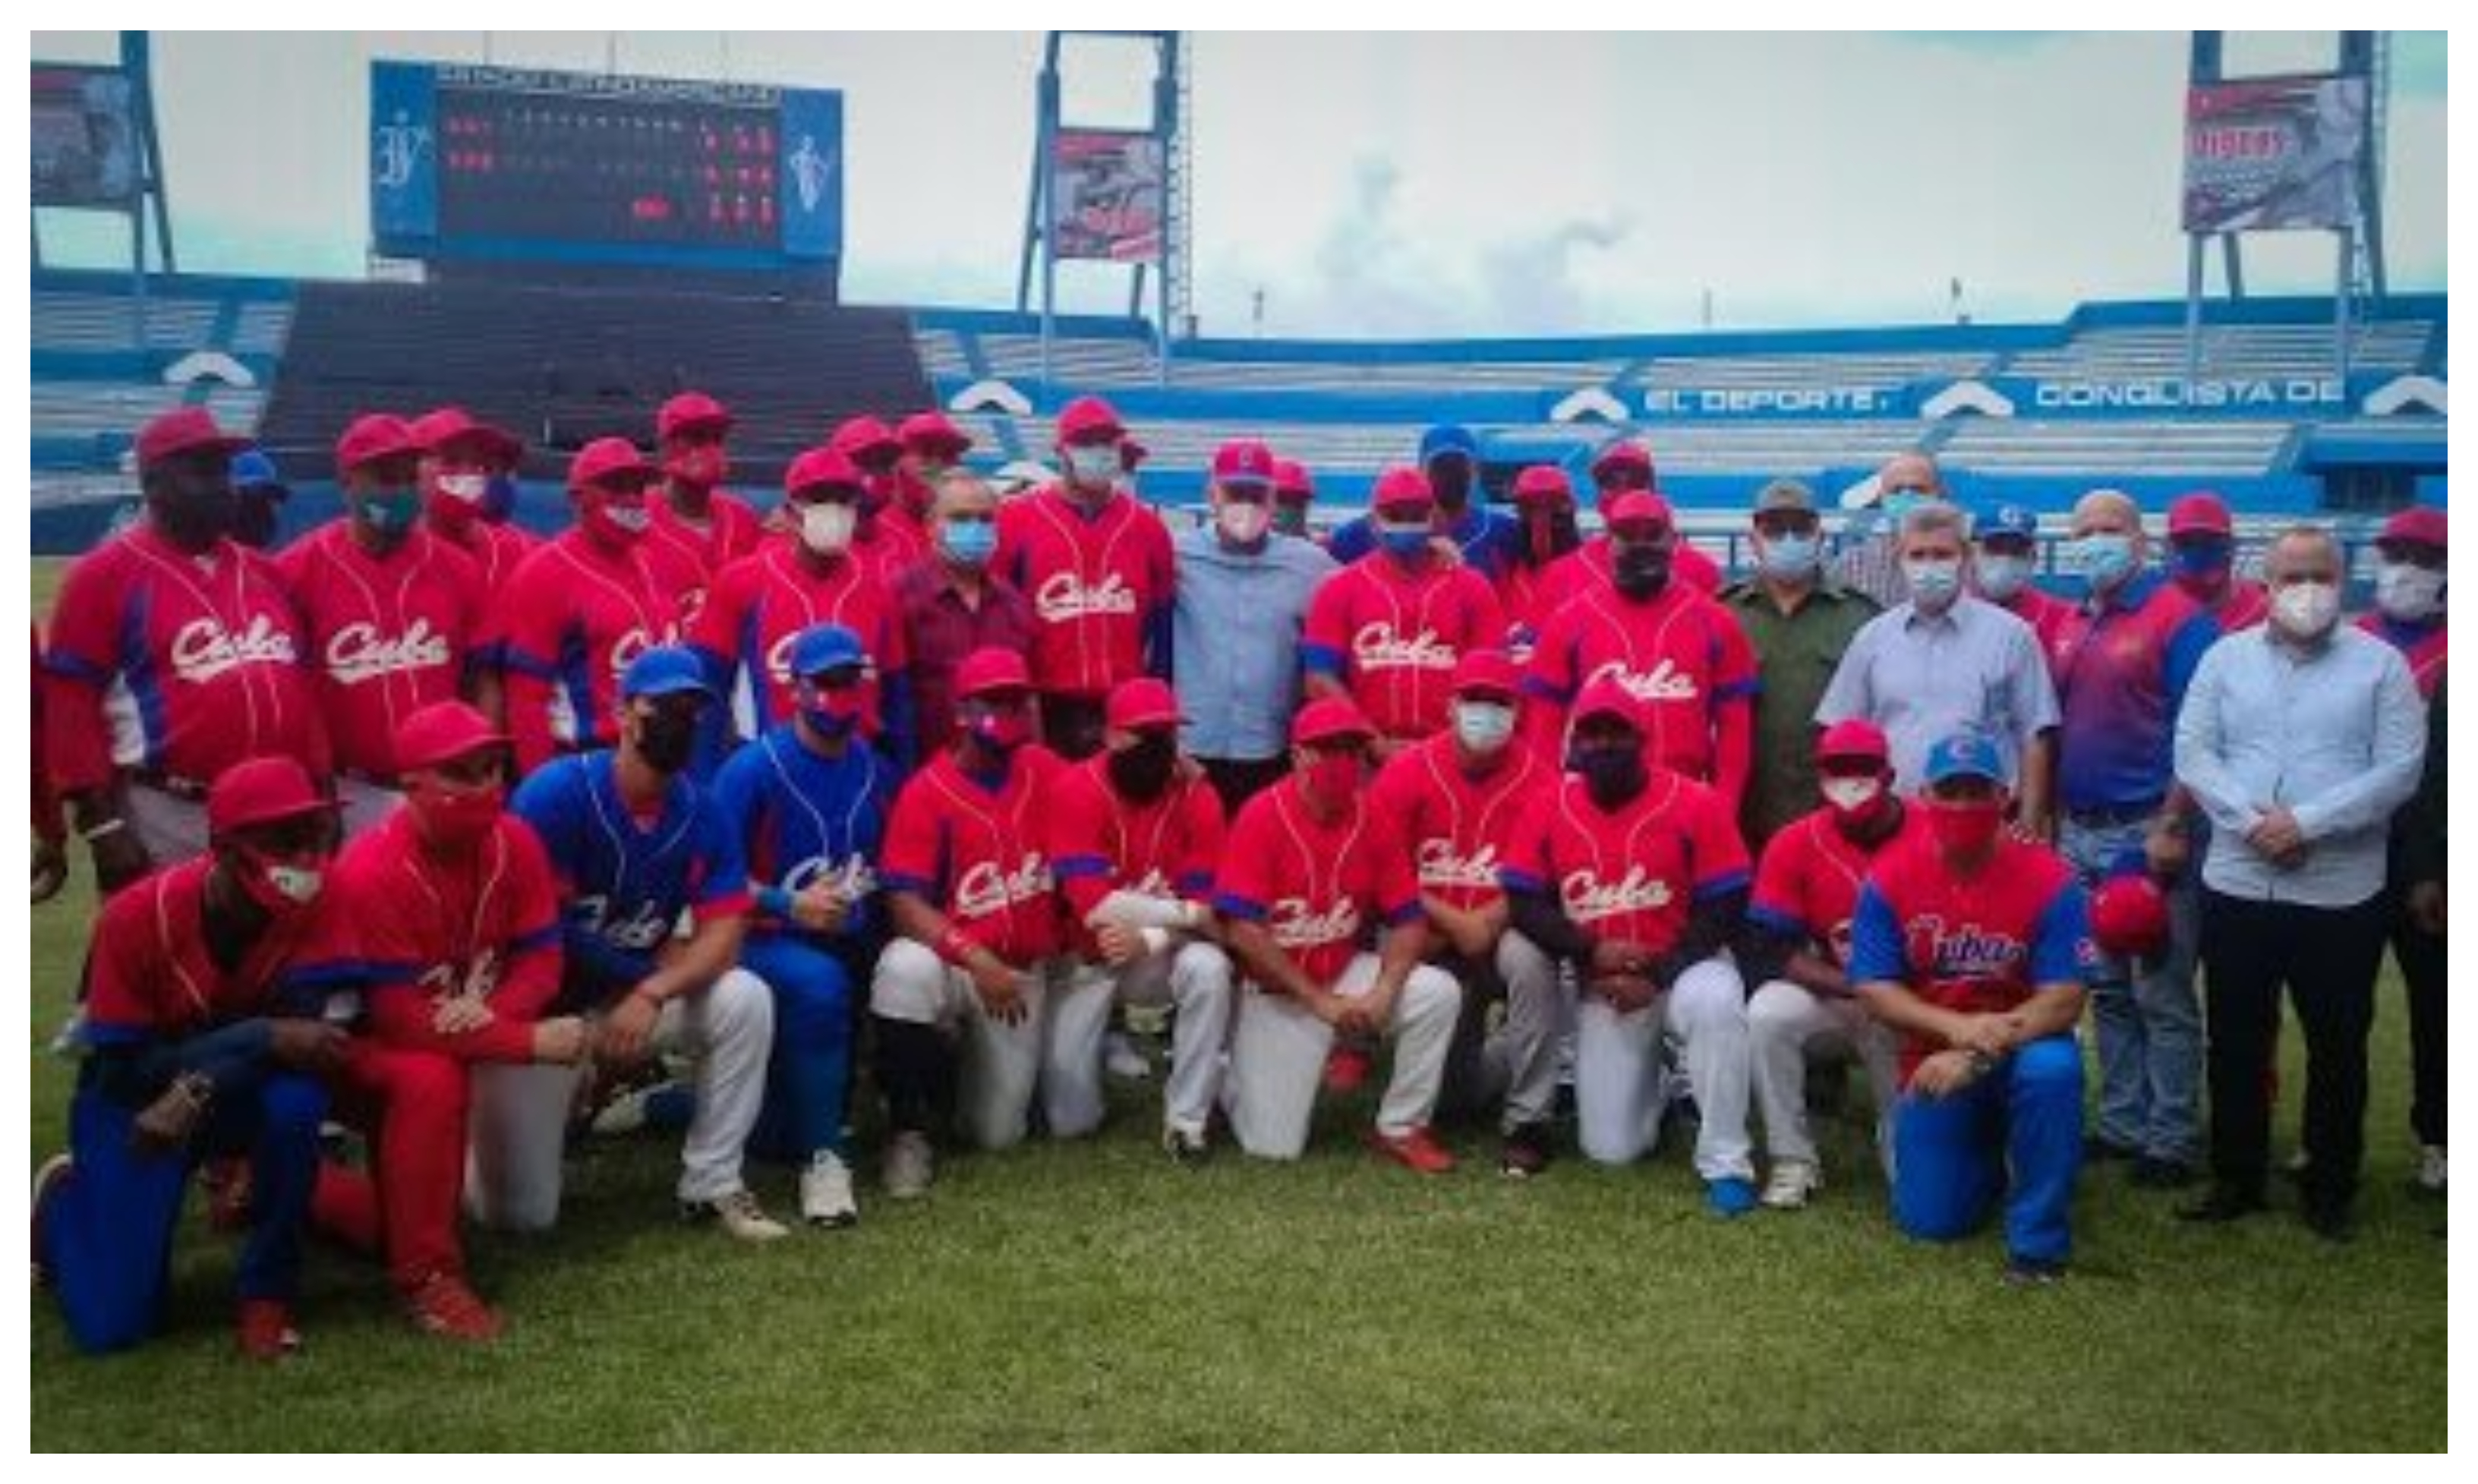 La selección cubana sufrió, de esta forma, su peor derrota en la competición preolímpica y no acudirá a Tokio. Foto Prensa Libre: Federación Cubana de Béisbol. 